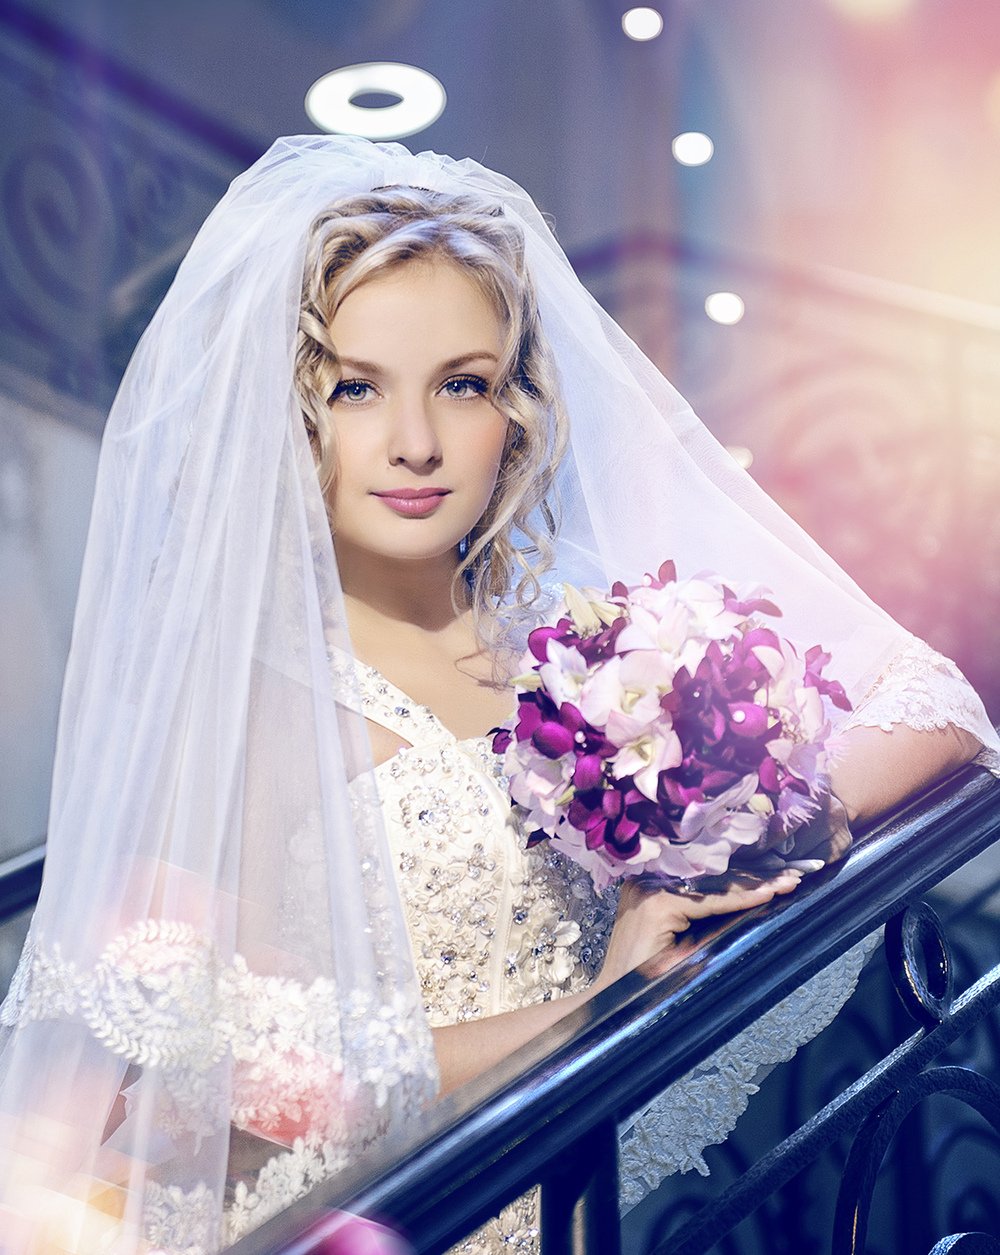 Брянцев красивая невеста. Иваново невесты. Фото невесты. Красивая невеста. Фотосессия невесты.